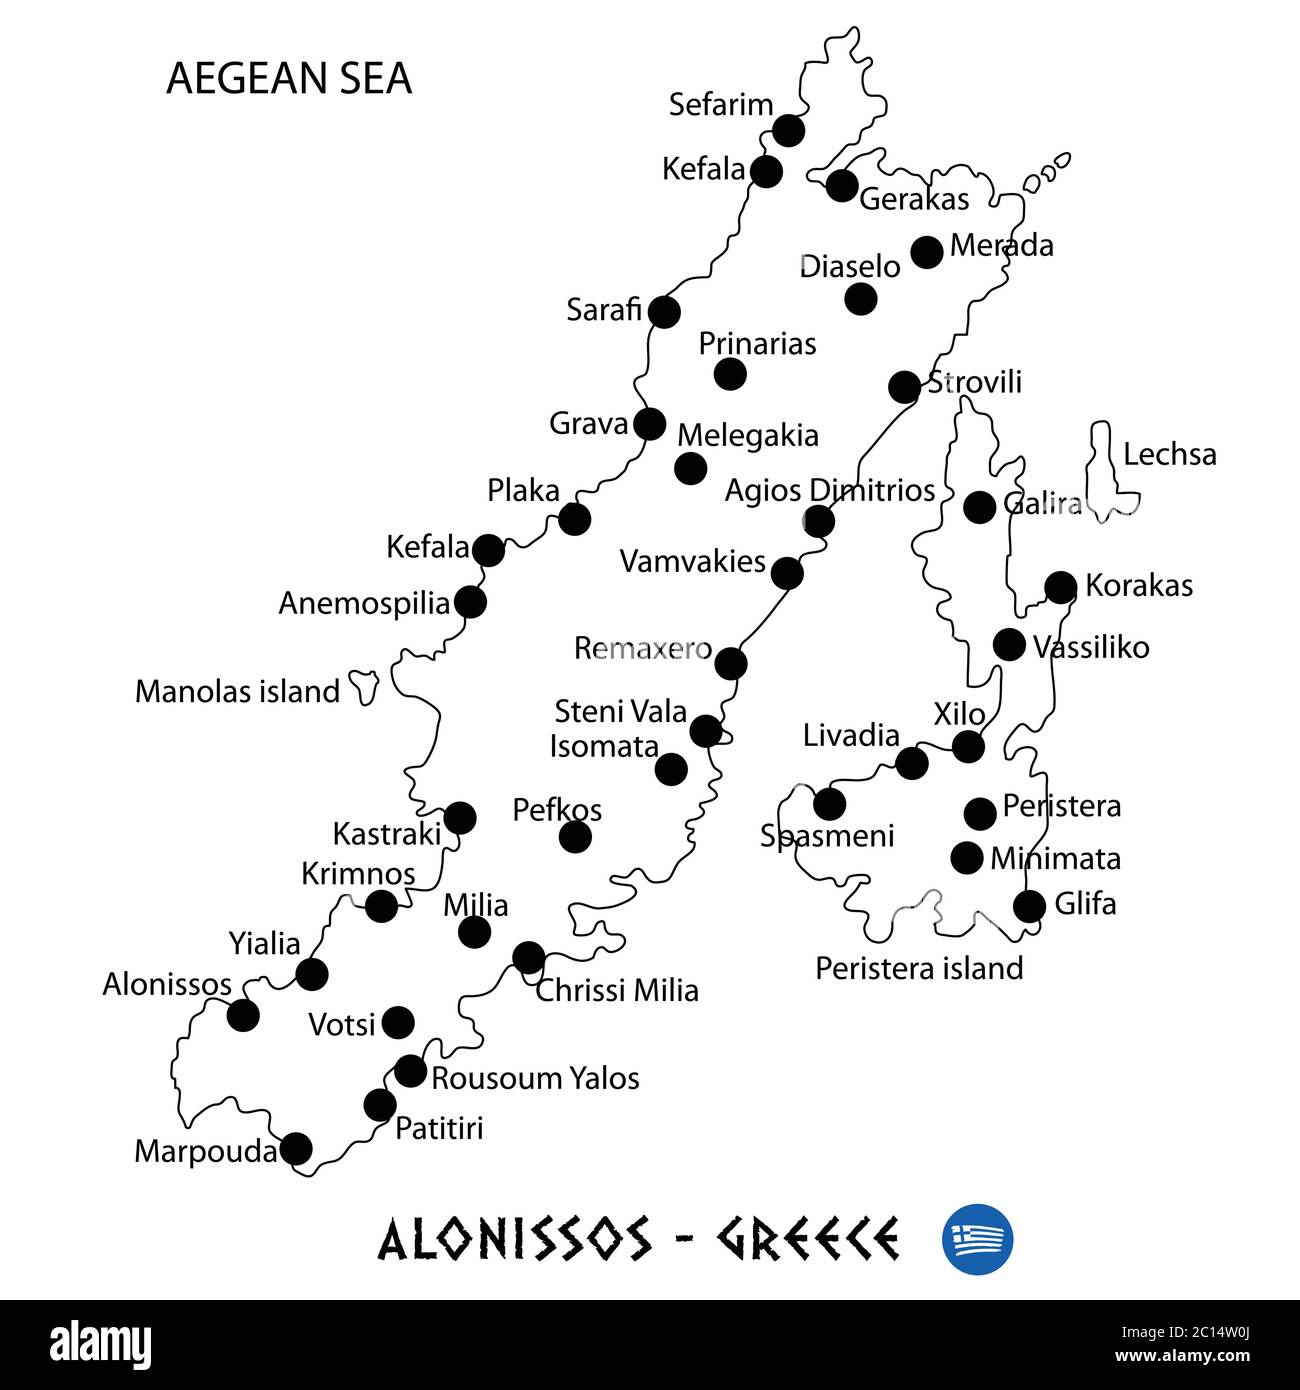 Insel Alonissos in Griechenland Kartenkunst auf weißem Hintergrund Stock Vektor